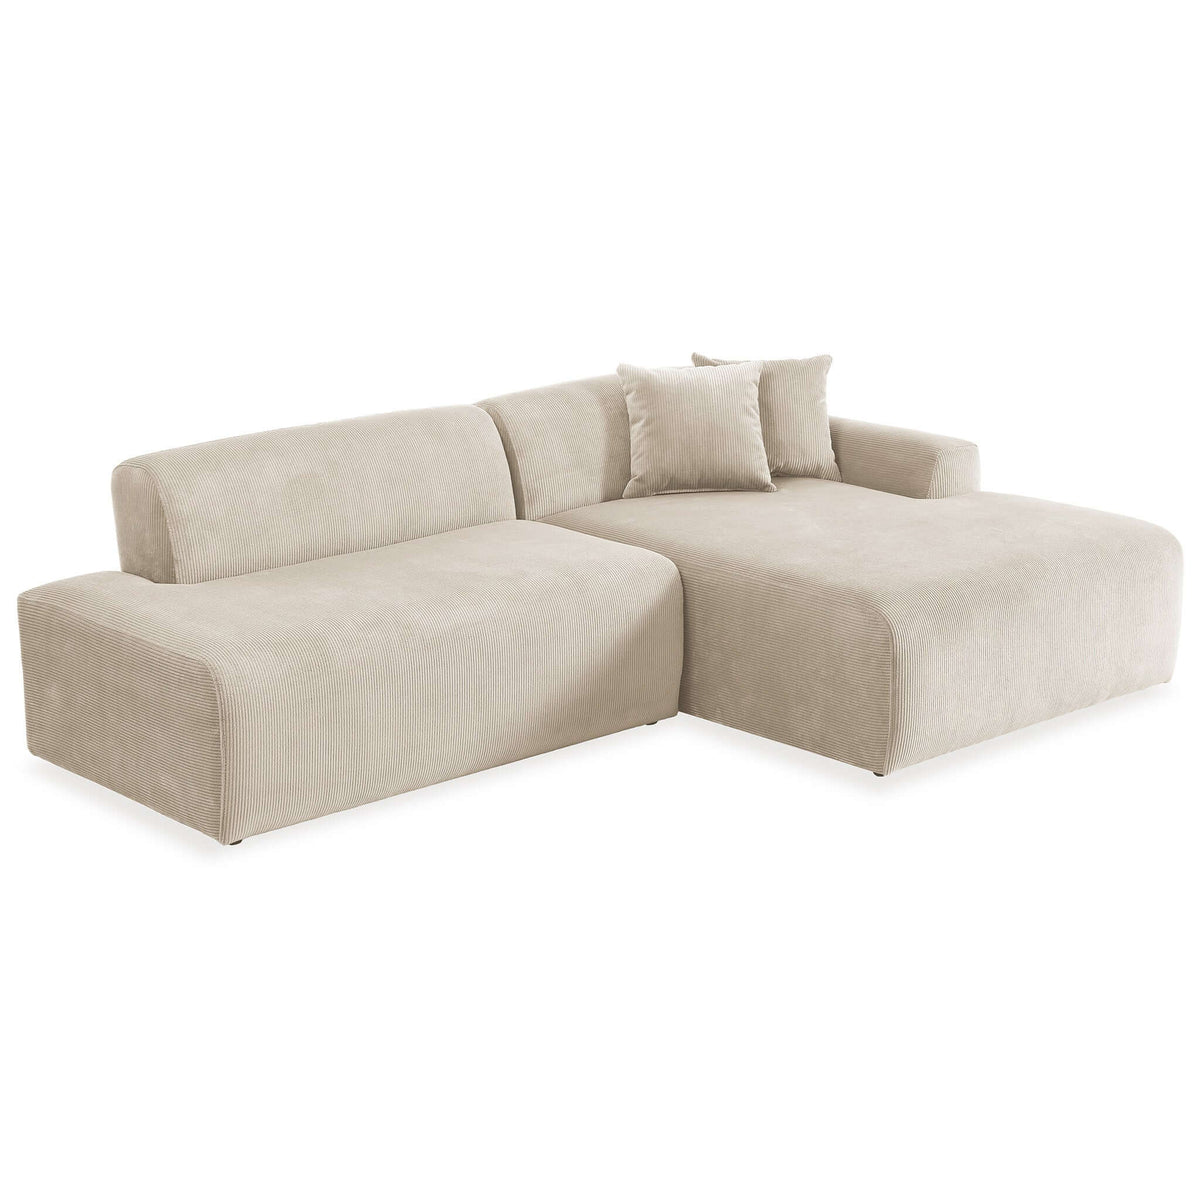 Doxtor Mid-Century Modern Symmetrical Right Sectional Velvet Sofa In Cream